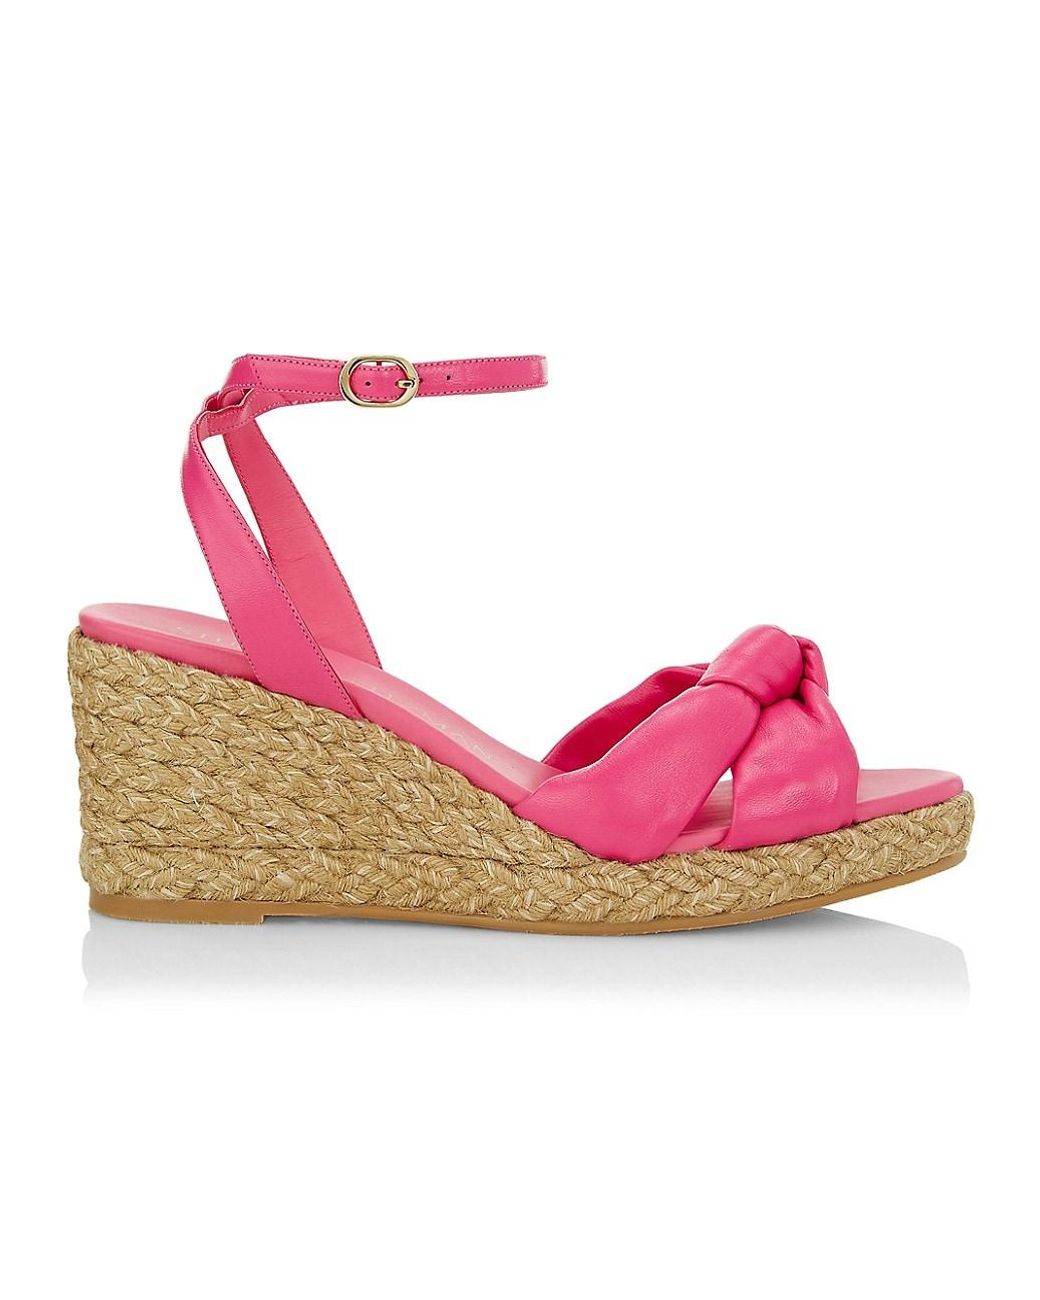 Stuart Weitzman Playa Knot Espadrille Wedge Sandals in Pink | Lyst